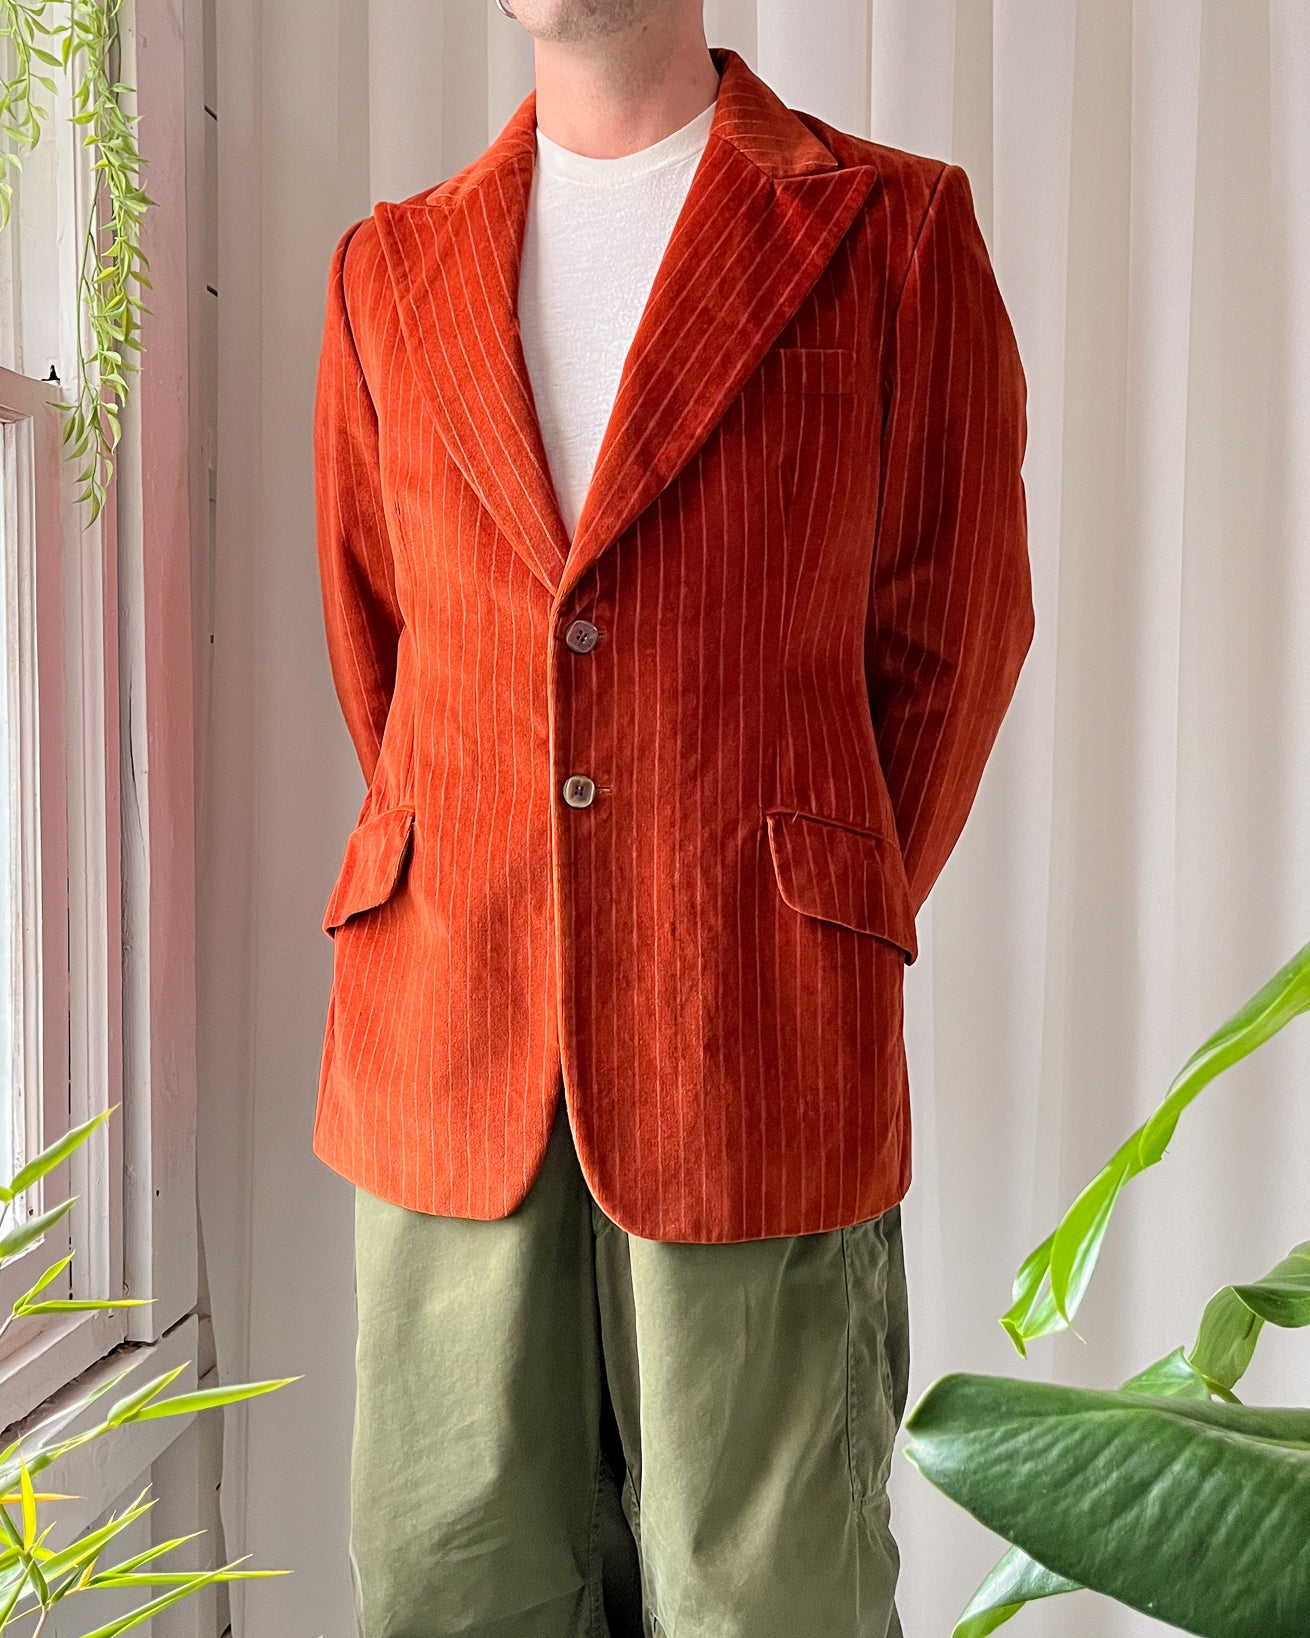 https://luckyvintageseattle.com/cdn/shop/files/lucky-vintage-seattle-mens-1970s-striped-burnt-orange-velvet-sport-coat-blazer-jacket_1_2000x.jpg?v=1700592375